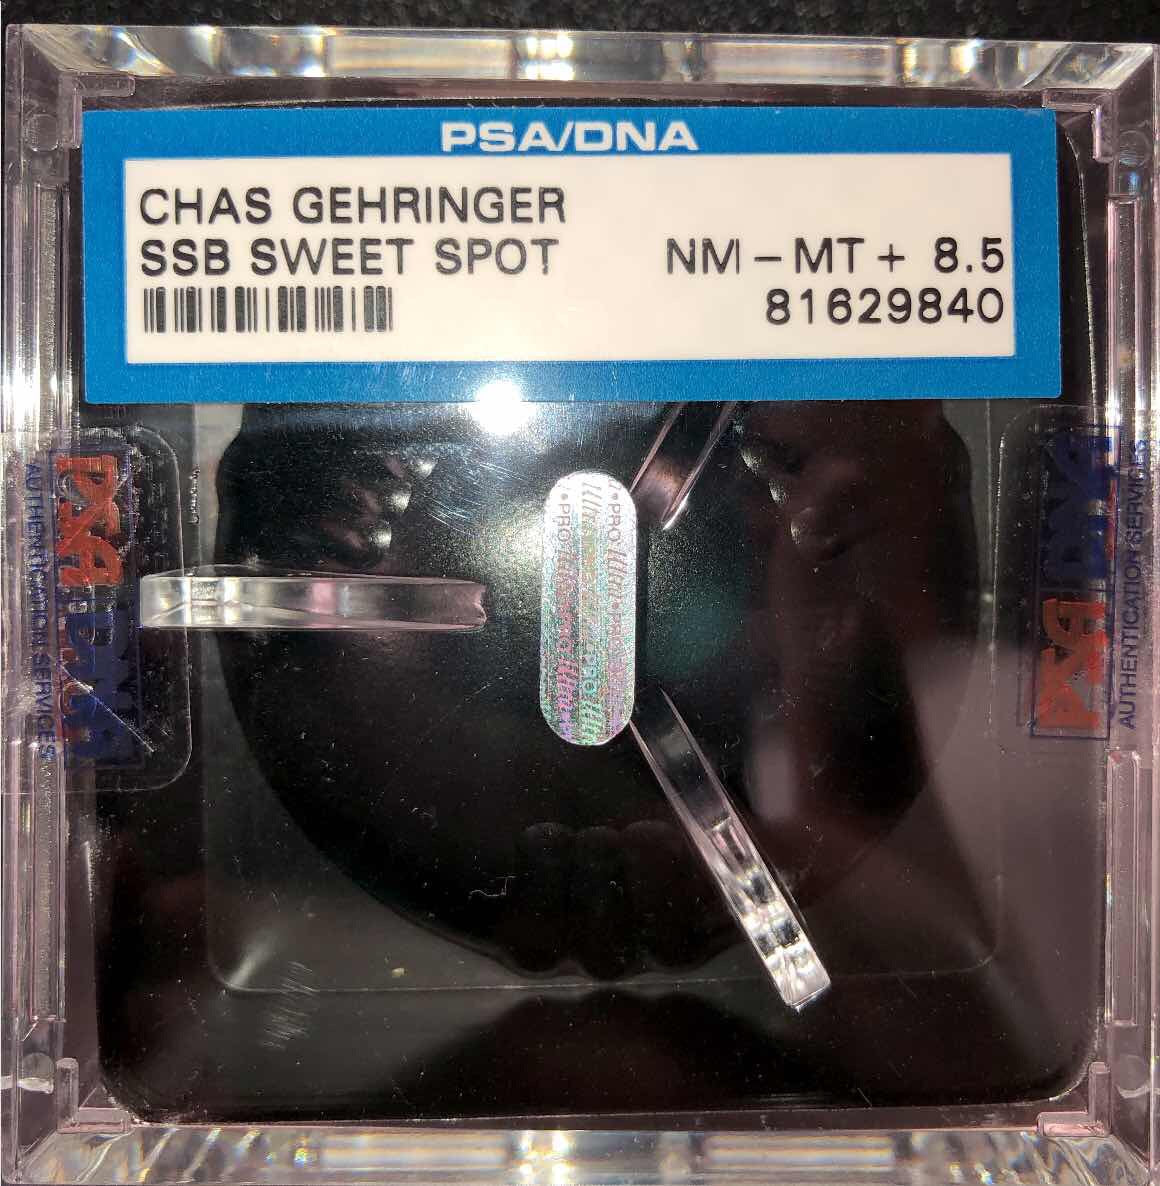 Charlie Gehringer New York Yankees Signed Baseball PSA/DNA